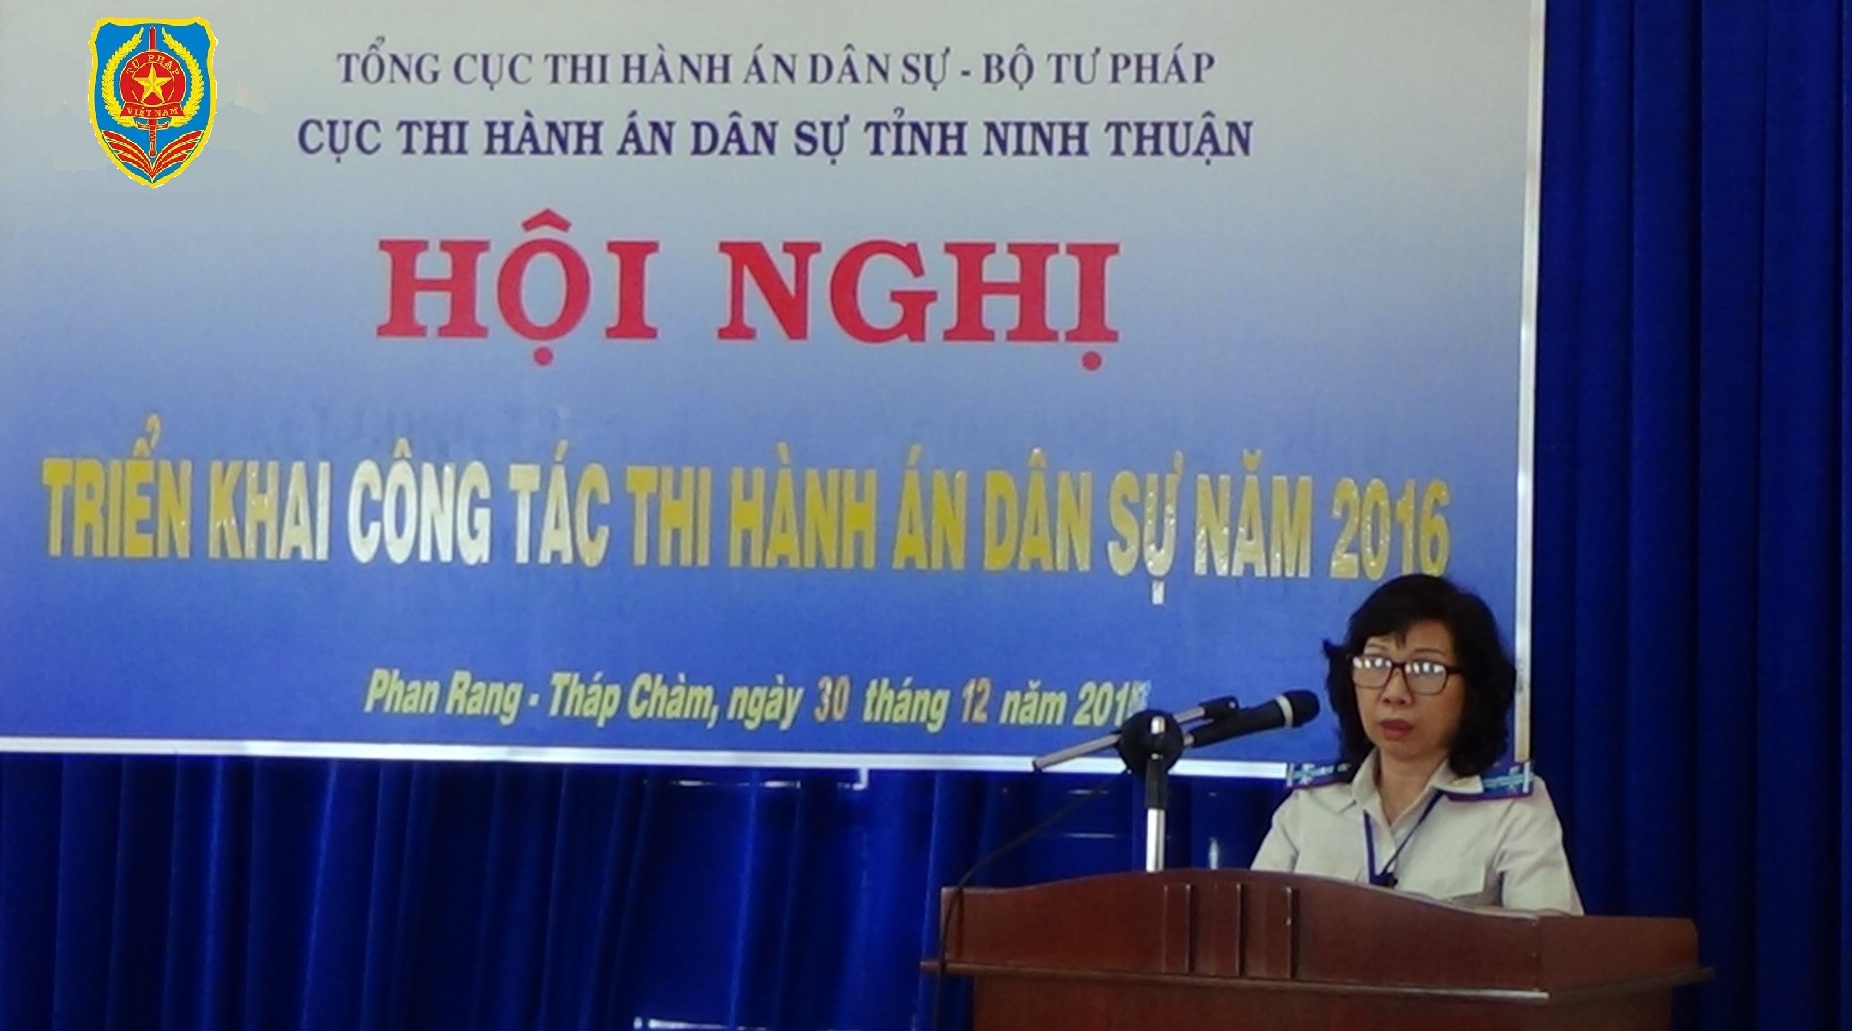 Cục Thi hành án dân sự tỉnh Ninh Thuận tổ chức Hội nghị triển khai công tác thi hành án dân sự năm 2016